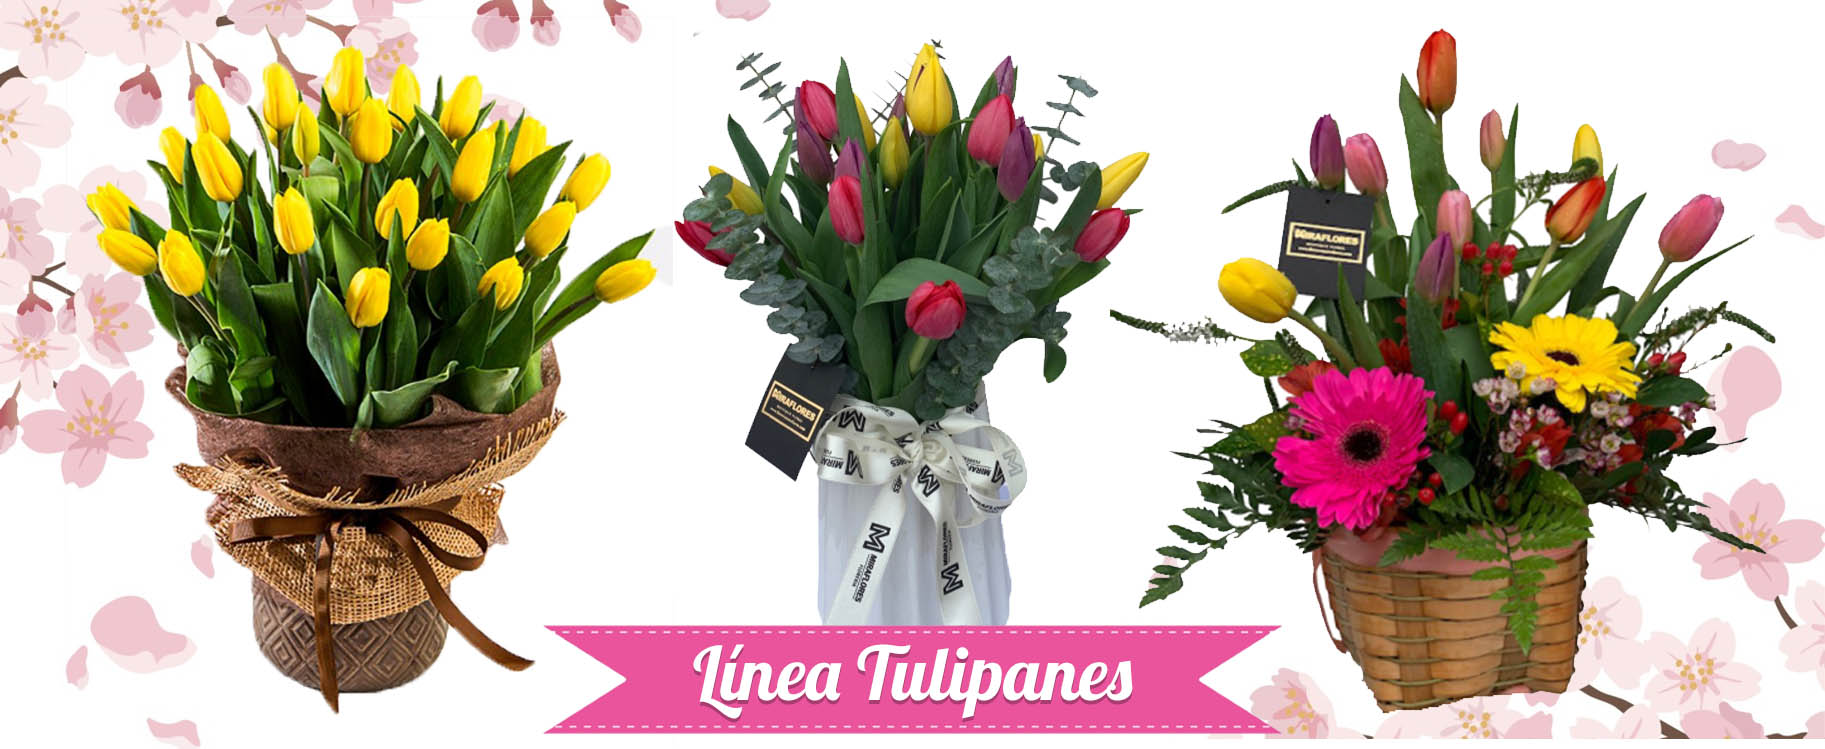 Tulipanes - Floreria Miraflores